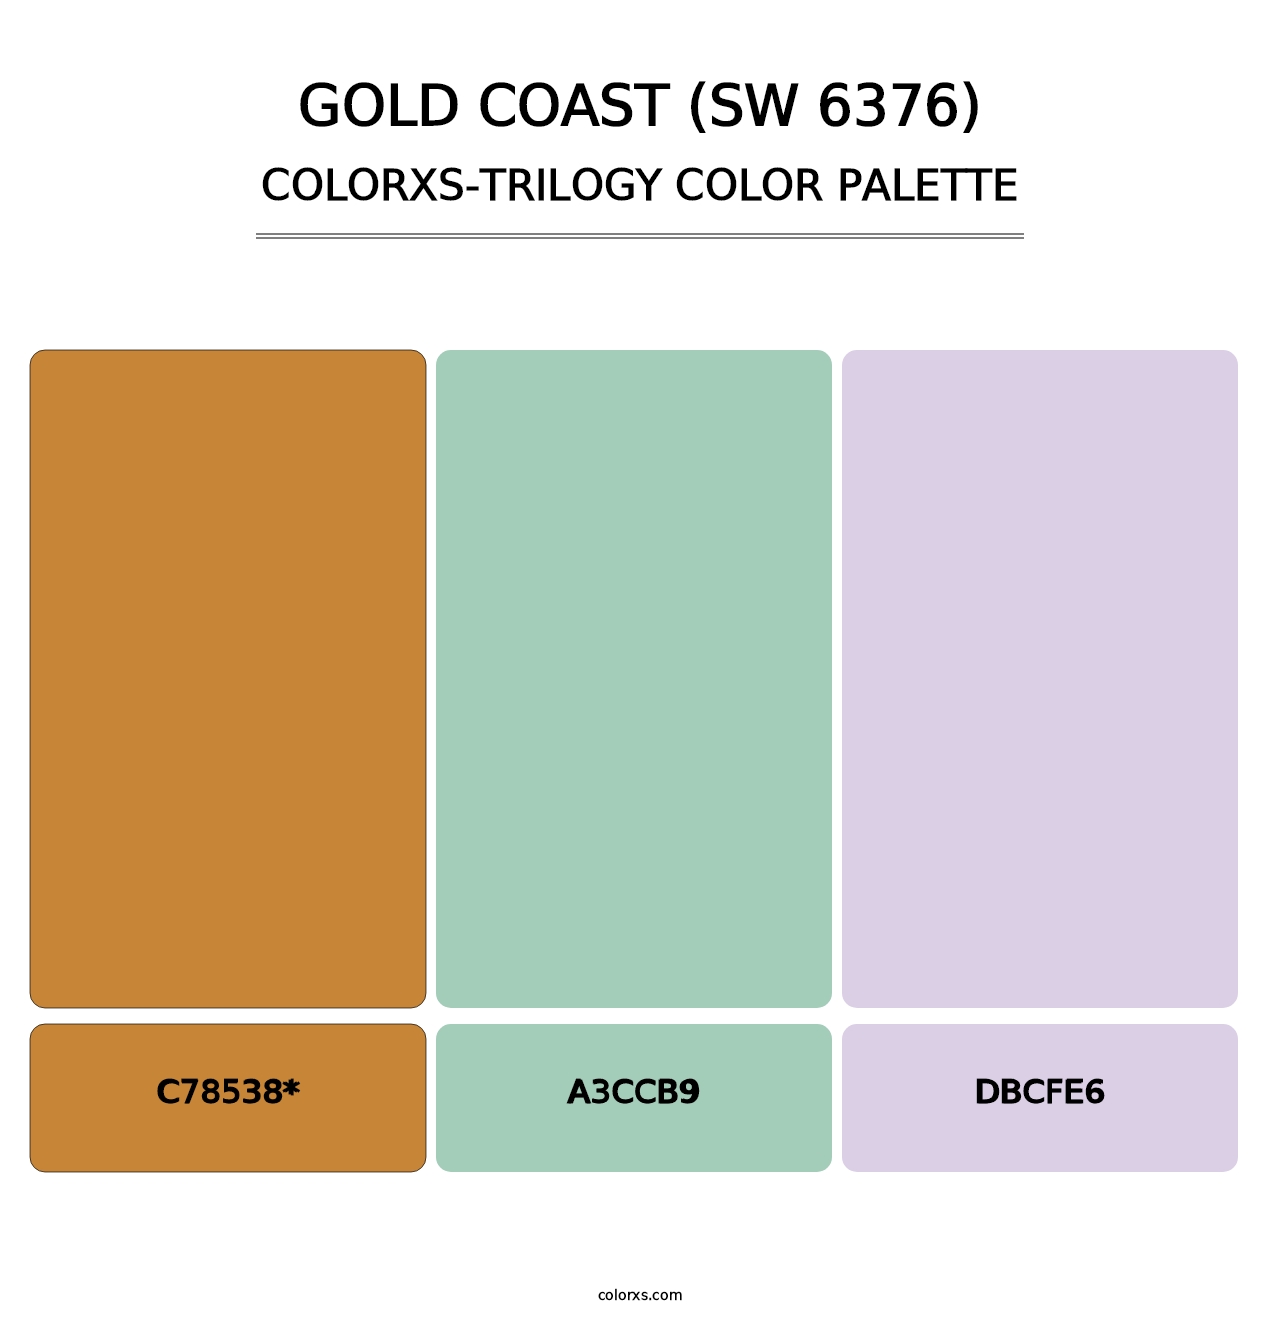 Gold Coast (SW 6376) - Colorxs Trilogy Palette